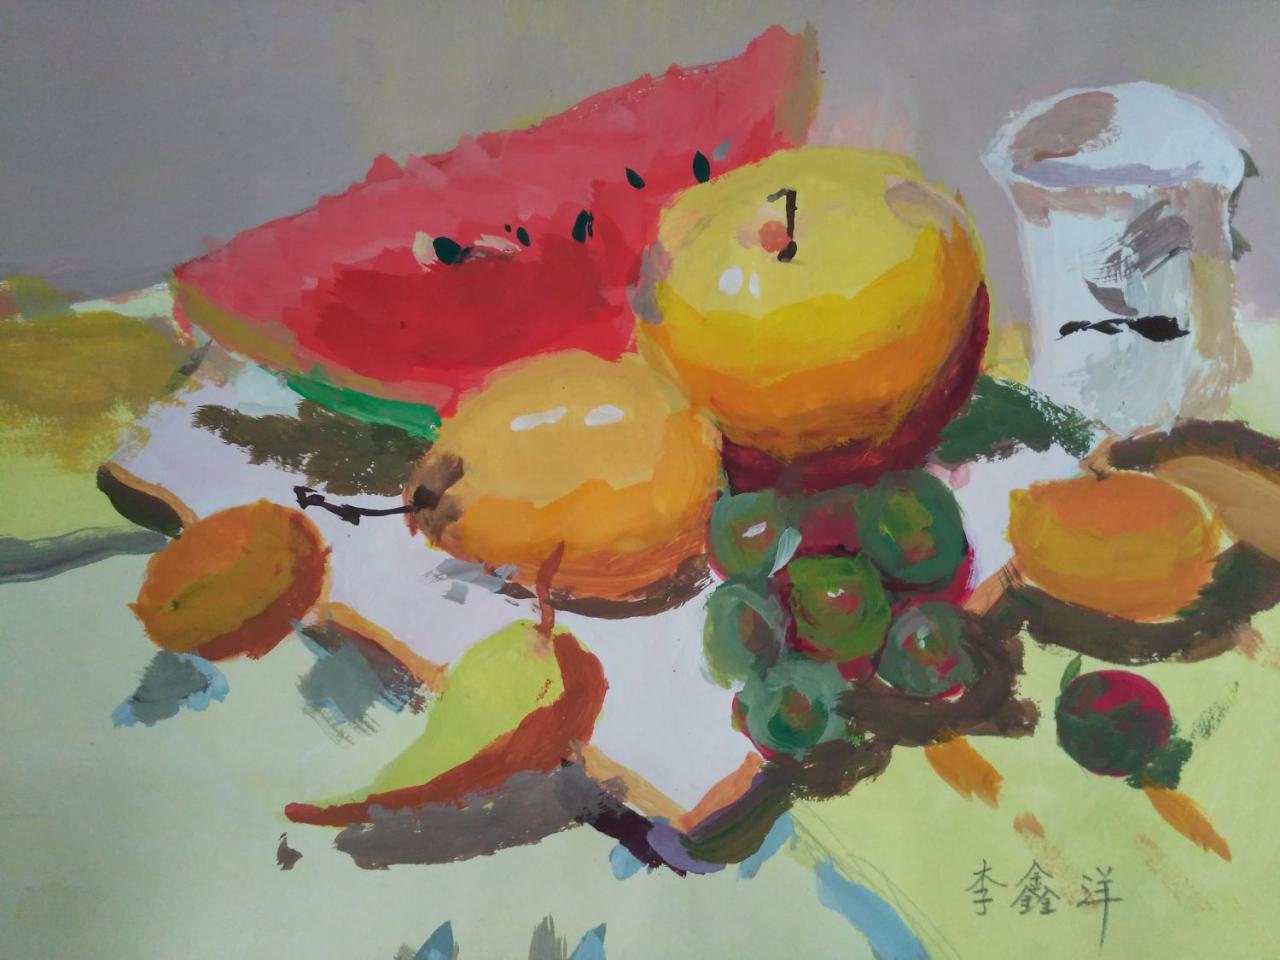 水粉静物 西瓜、苹果、梨、葡萄、辣椒、盘子、玻璃杯等 李鑫洋画